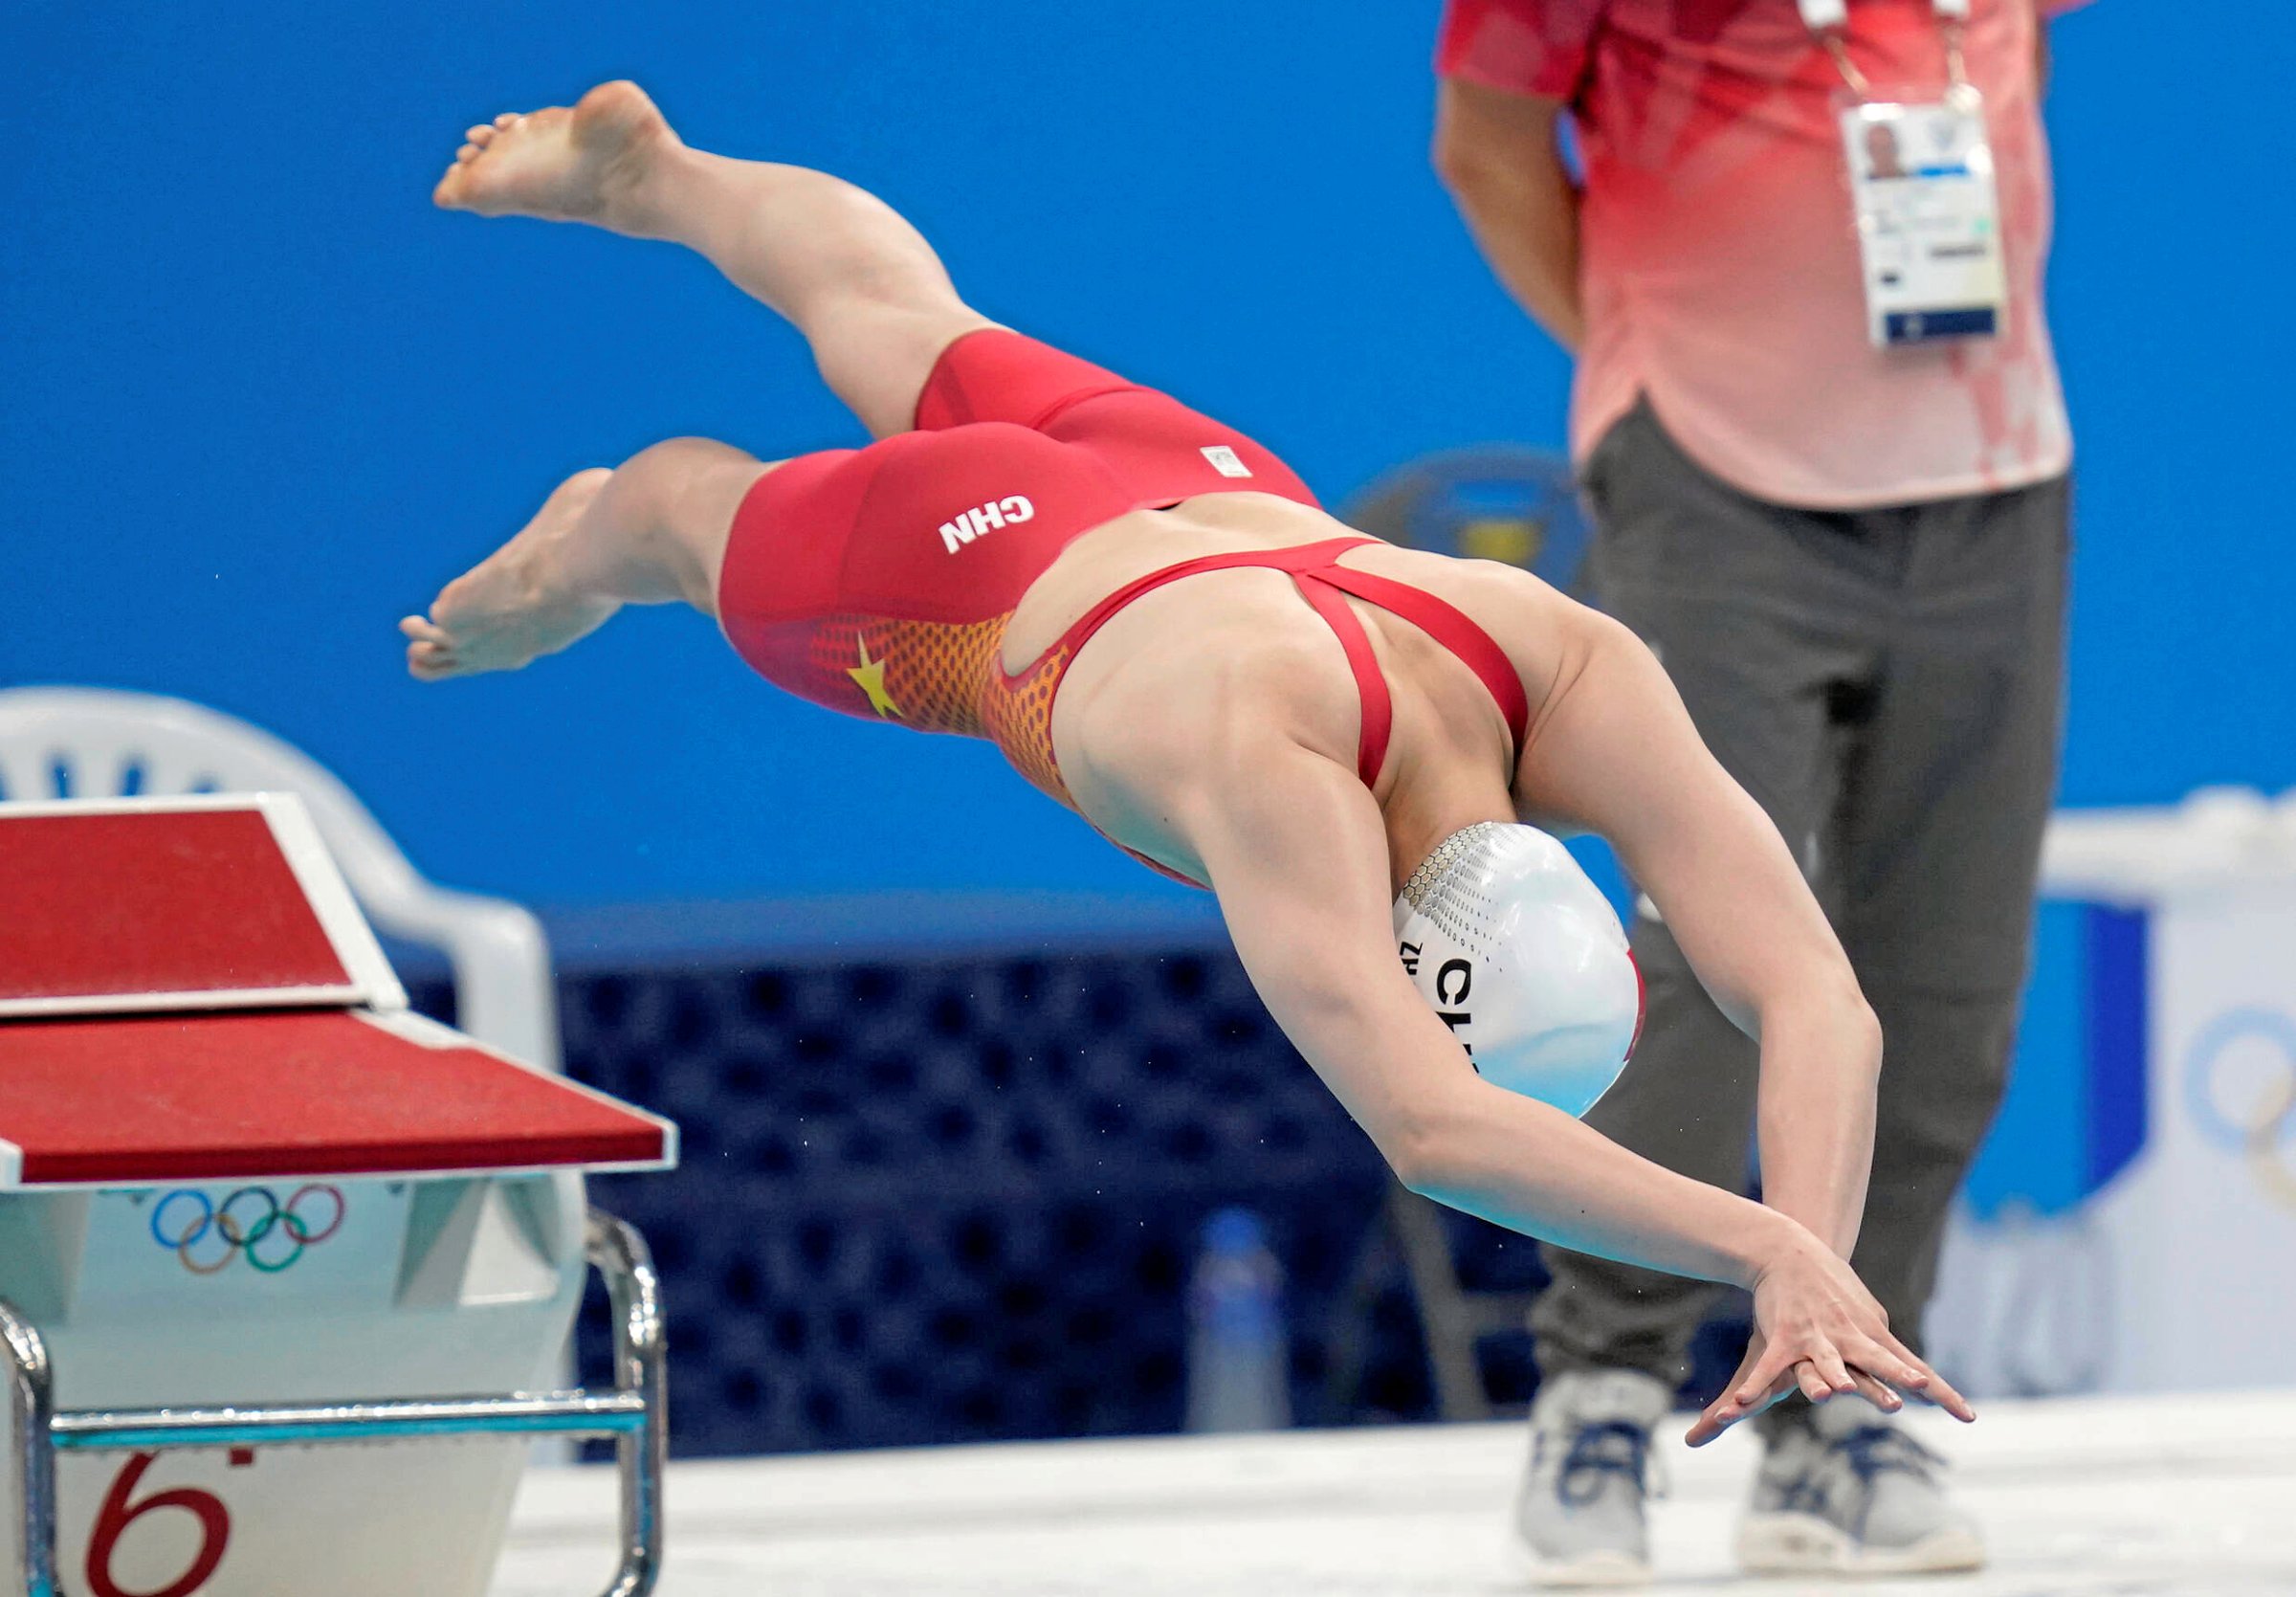 Olympische-Spiele-Doping-China-steht-im-Schwimmen-unter-besonderer-Beobachtung